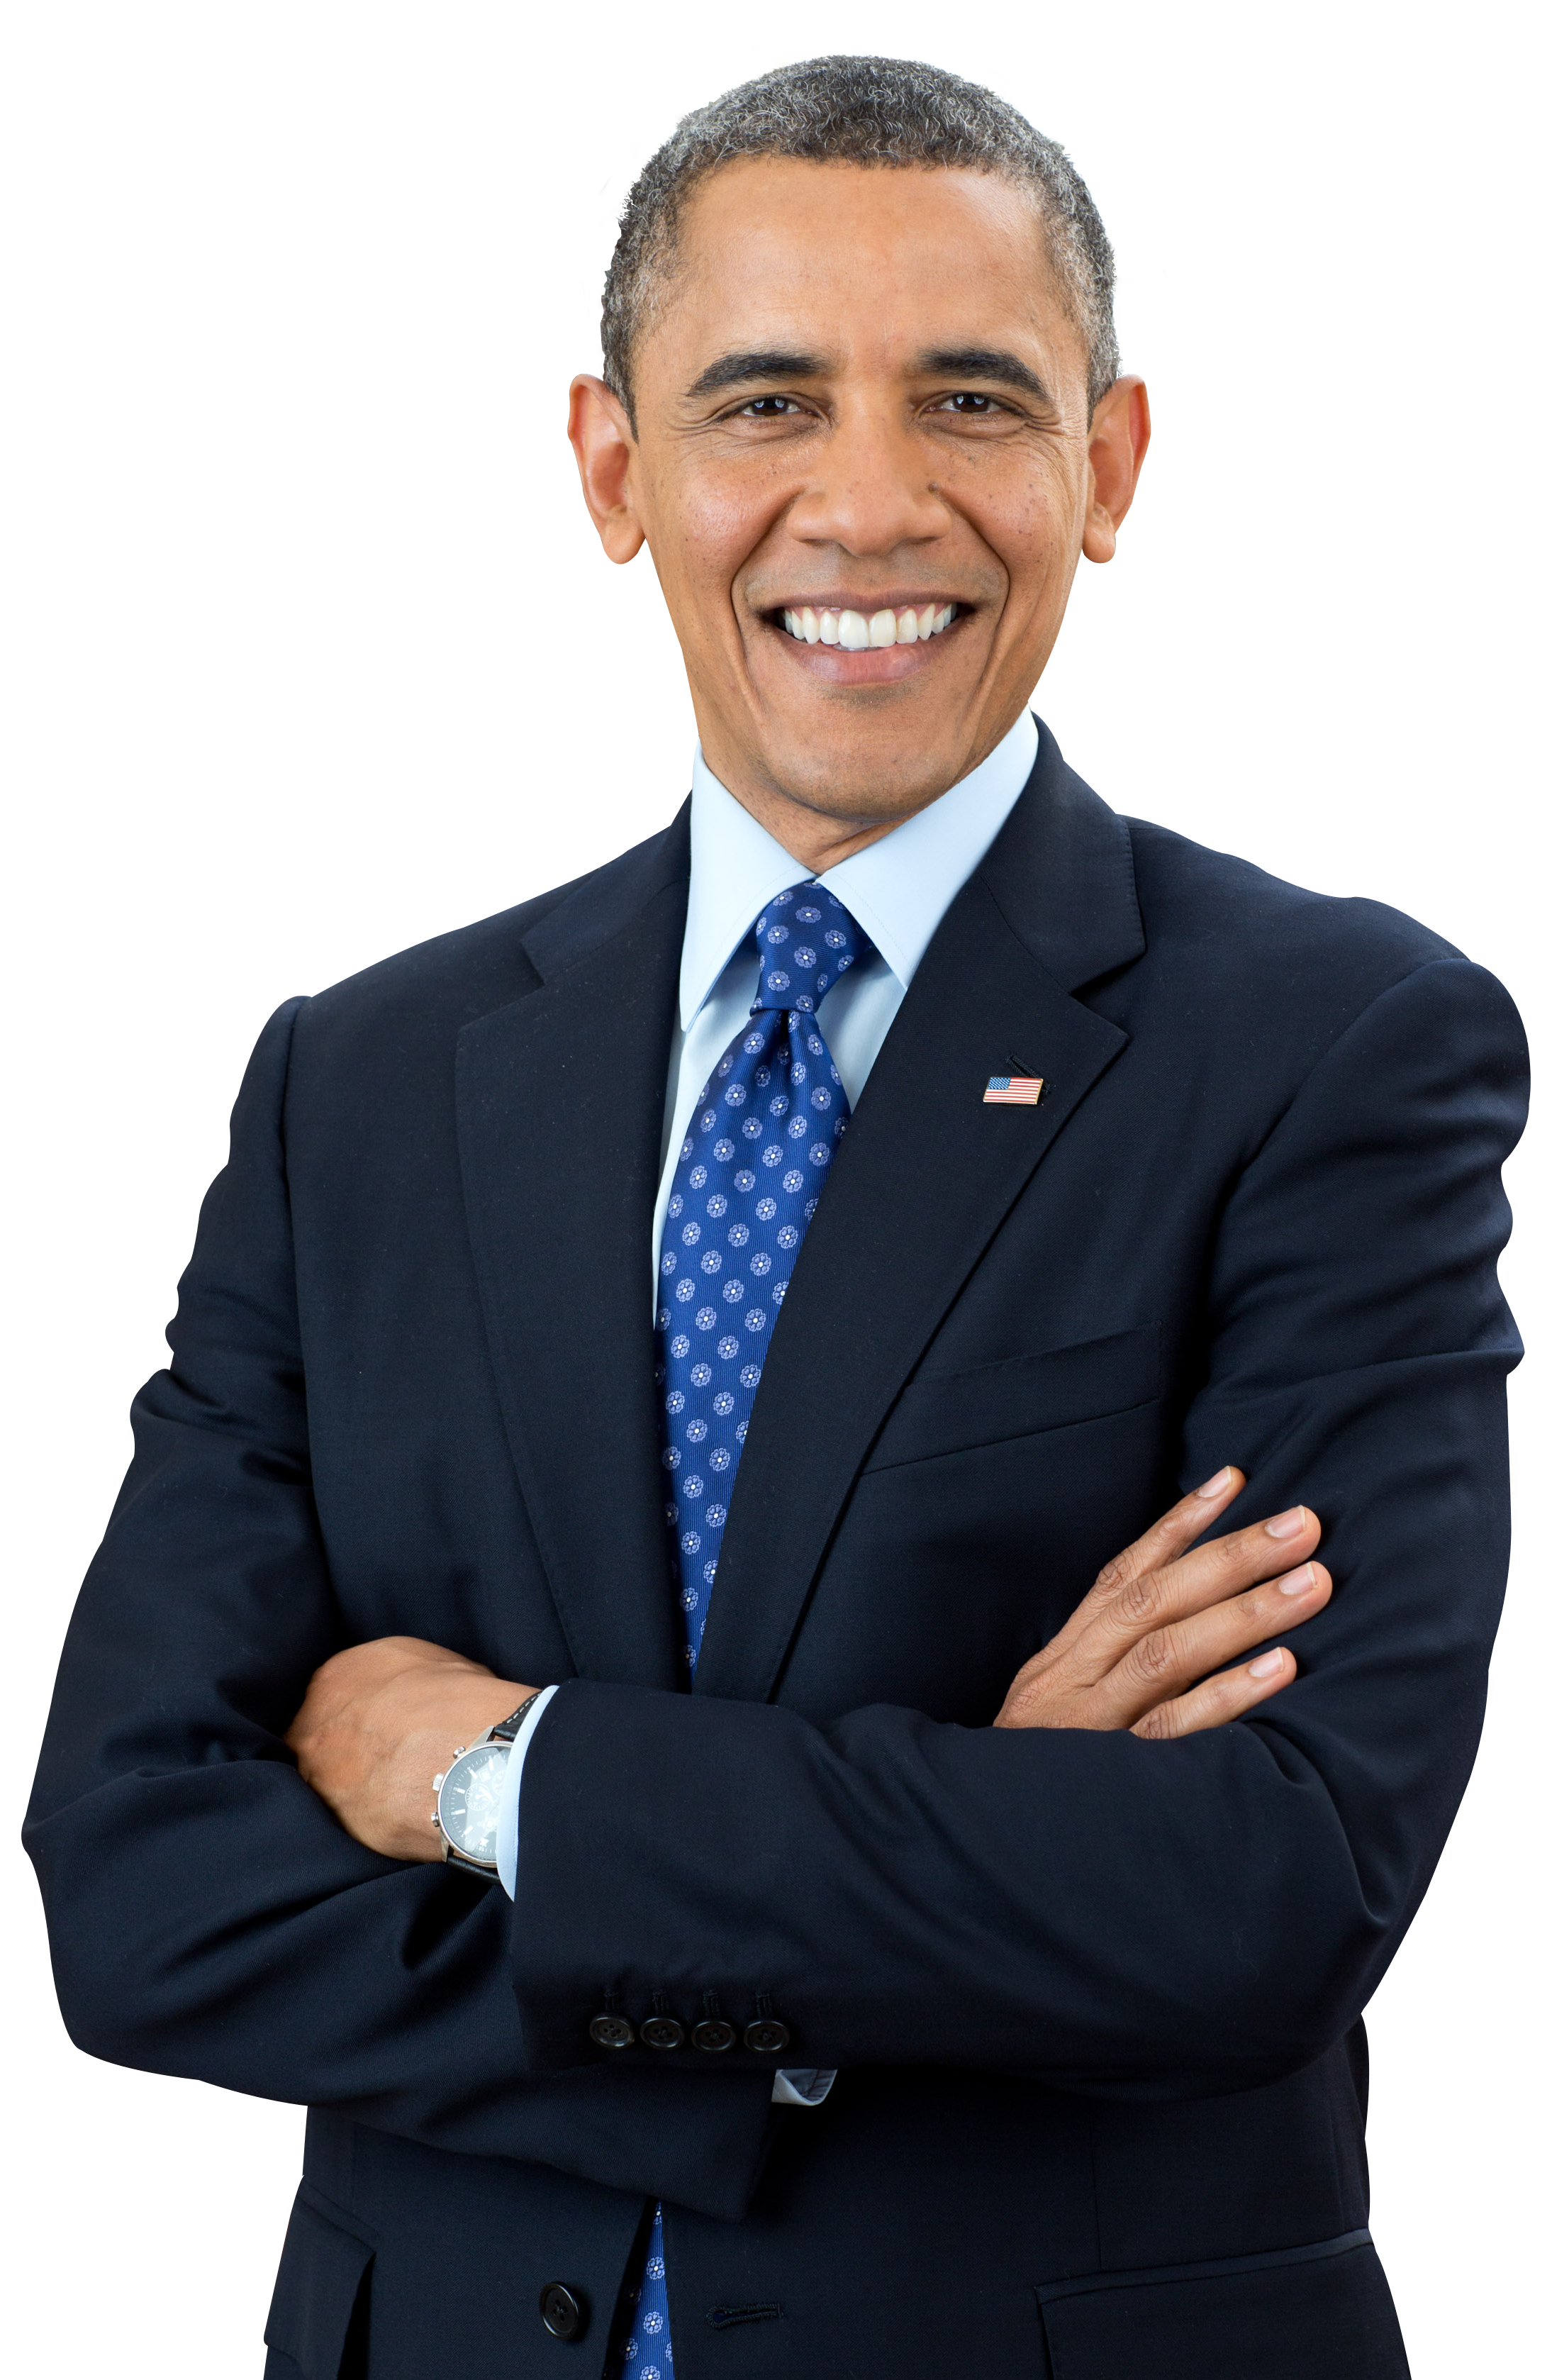 Barack Obama Png - KibrisPDR